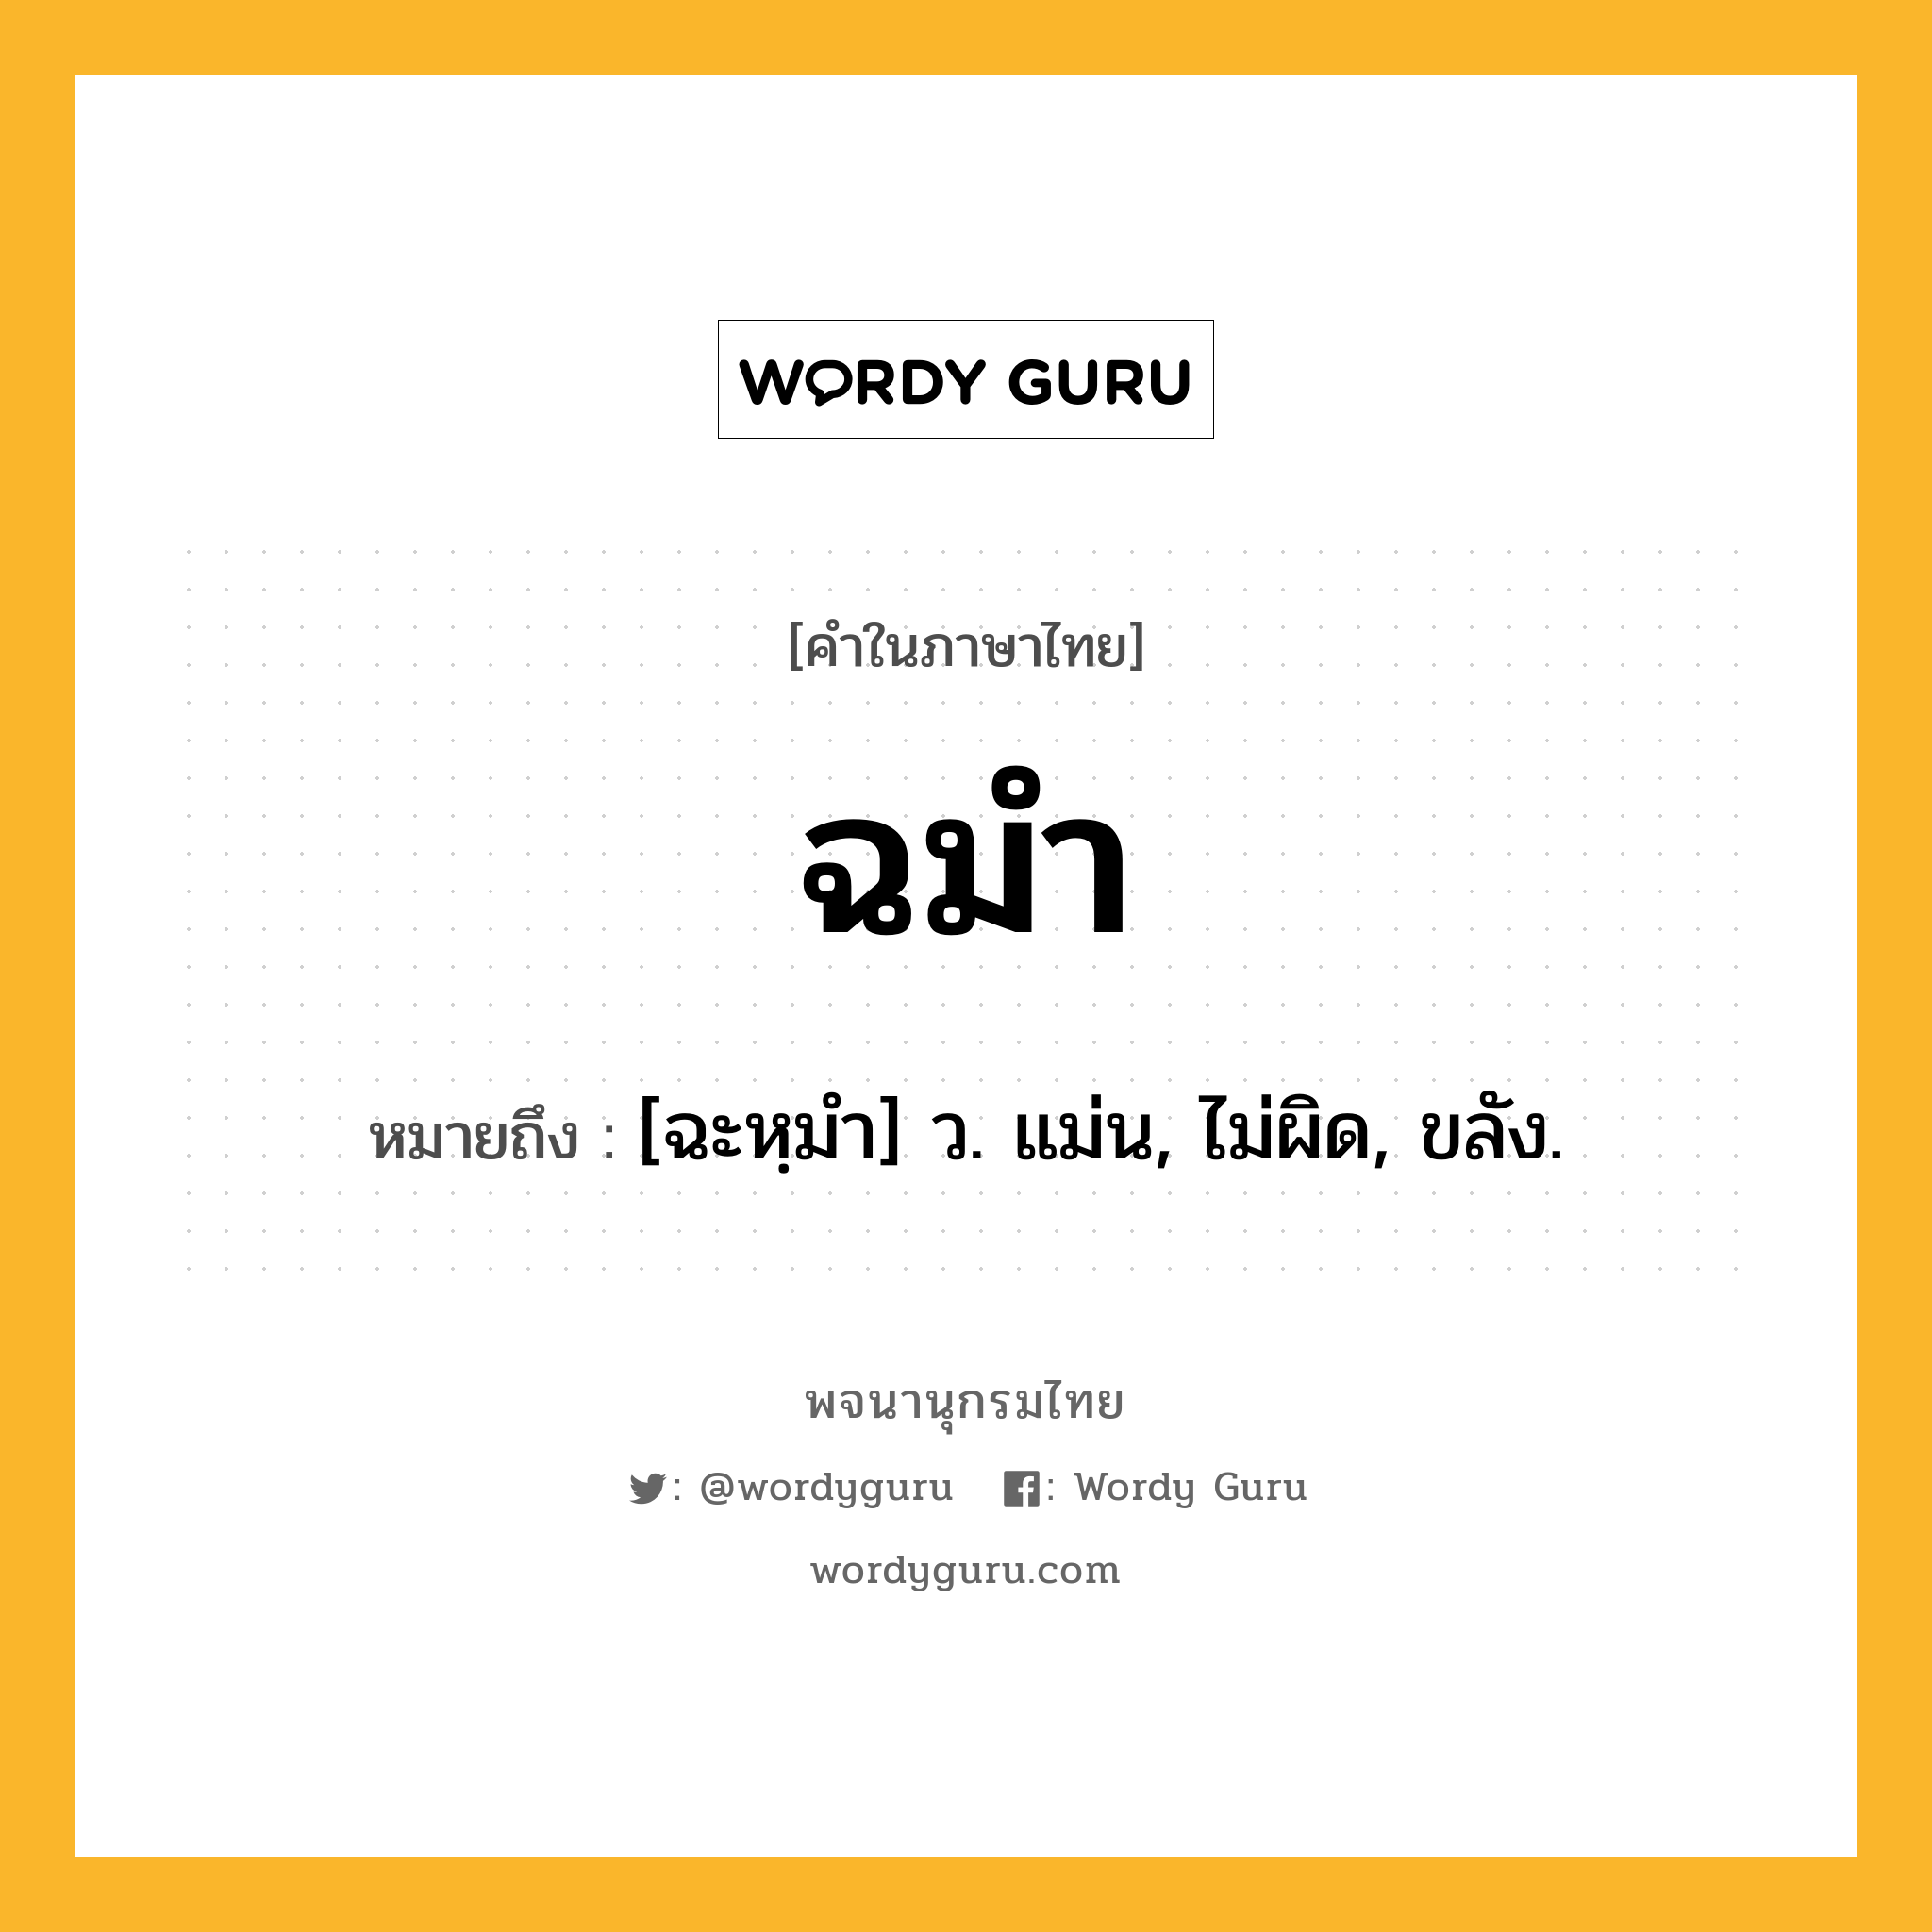 ฉมำ หมายถึงอะไร?, คำในภาษาไทย ฉมำ หมายถึง [ฉะหฺมํา] ว. แม่น, ไม่ผิด, ขลัง.